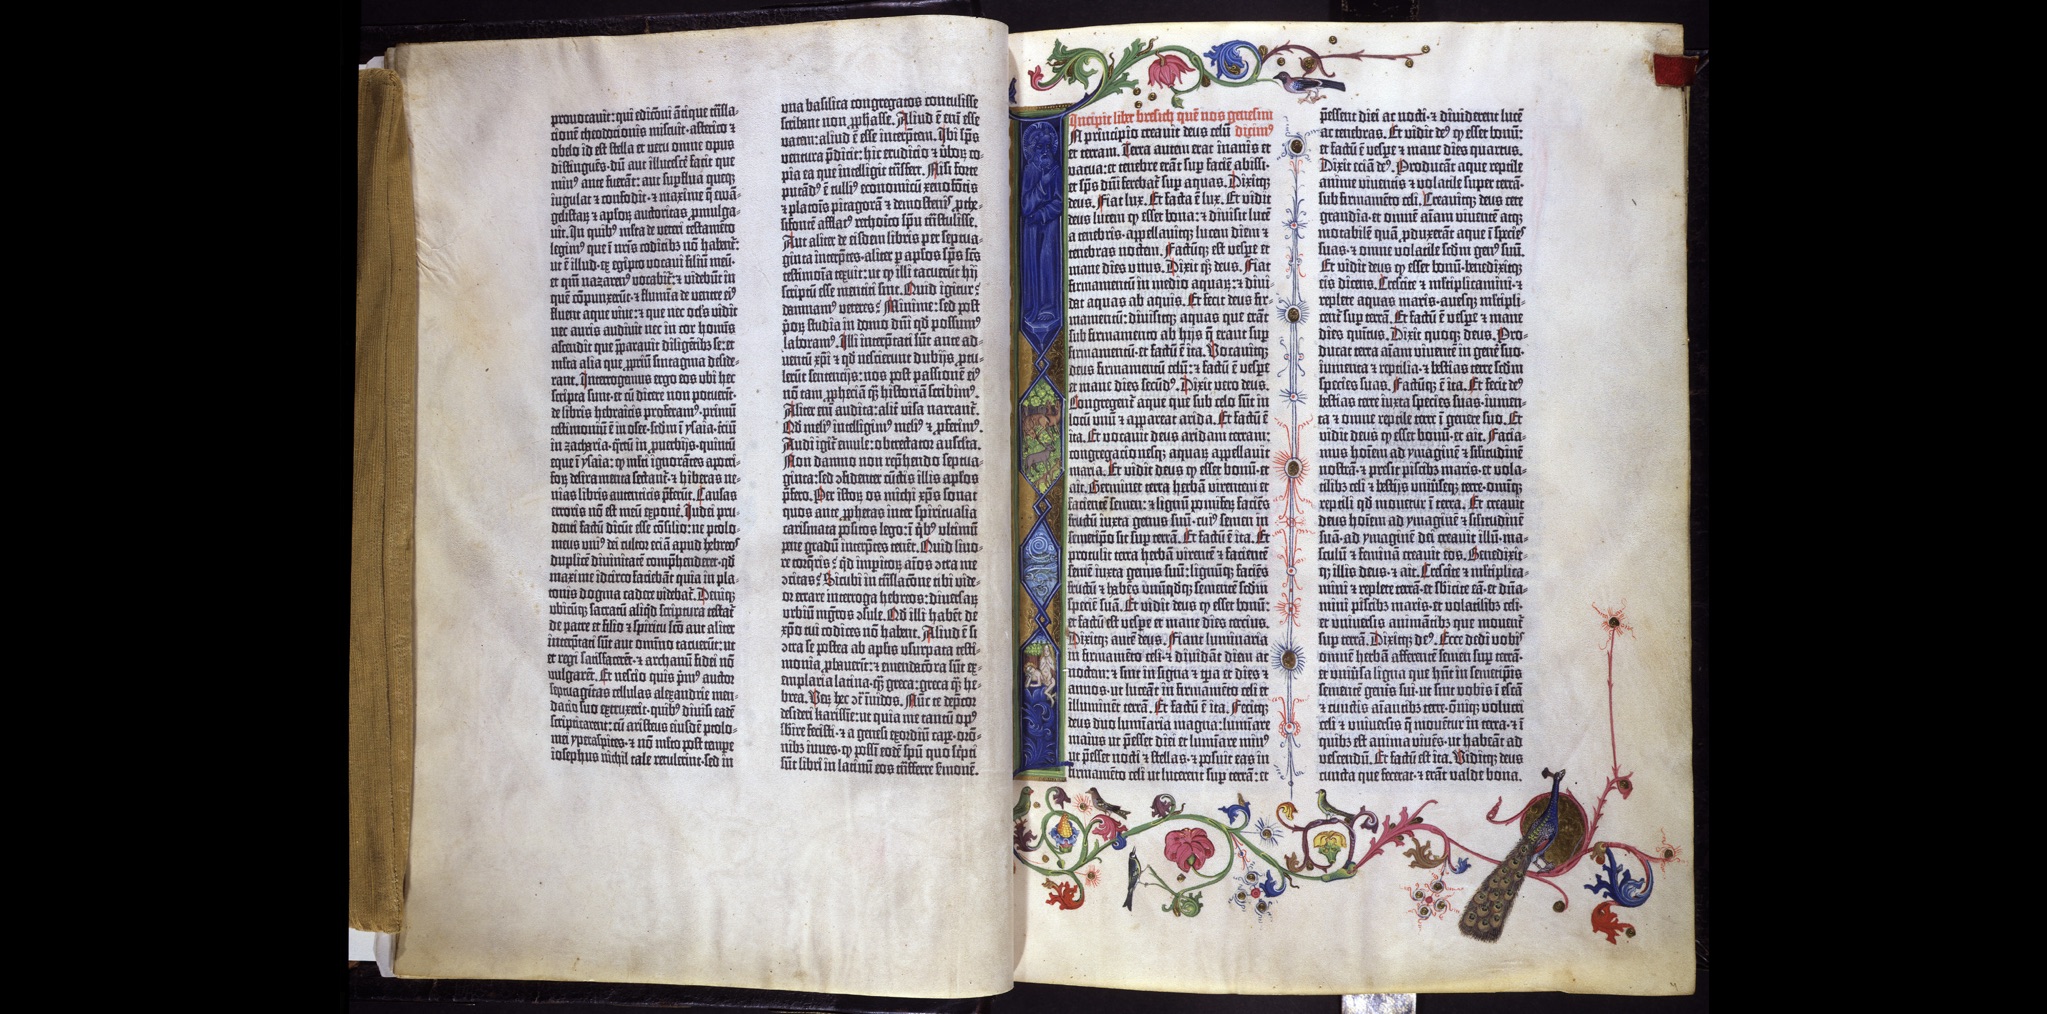 La Bible de Gutenberg, vers 1455